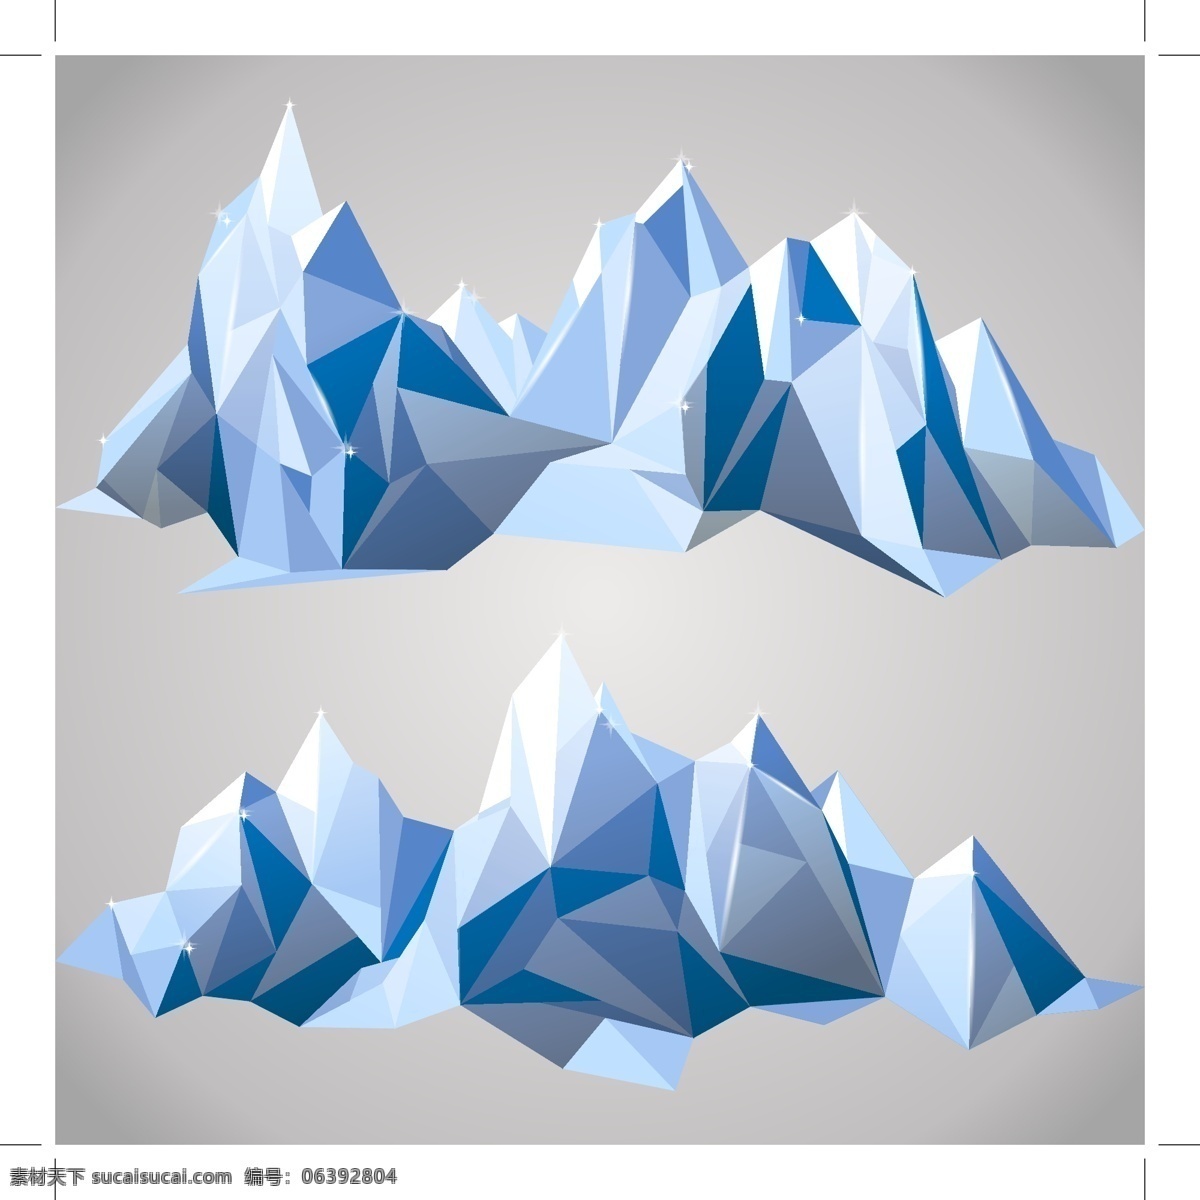 多边形 拼接 冰山 矢量 多边形拼接 蓝白色 矢量图 其他矢量图